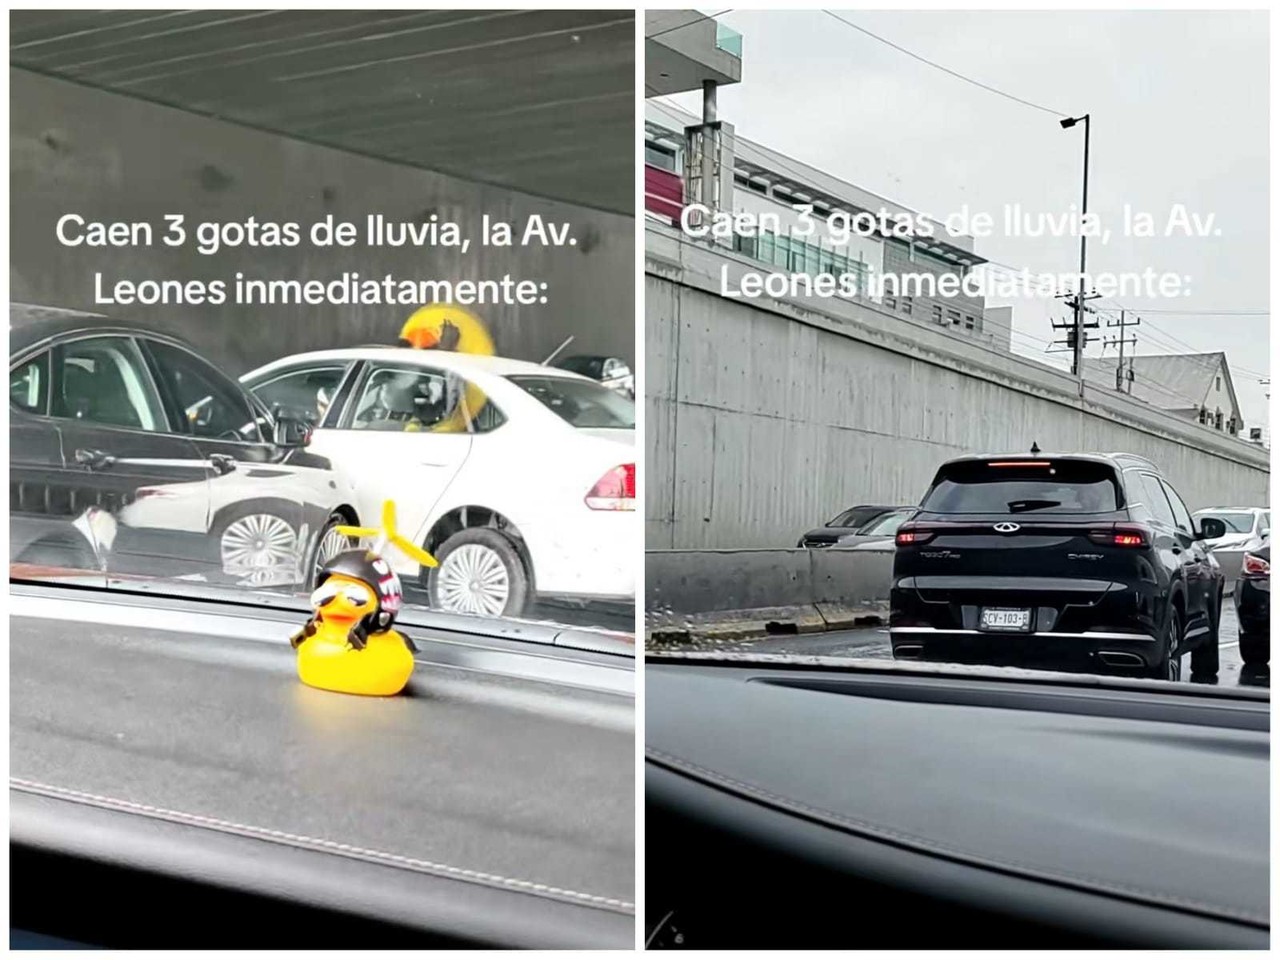 En Monterrey, Nuevo León, los automovilistas han sido protagonistas de un caos vial debido a la falta de precaución al manejar en condiciones de lluvia. Foto: Tiktok.